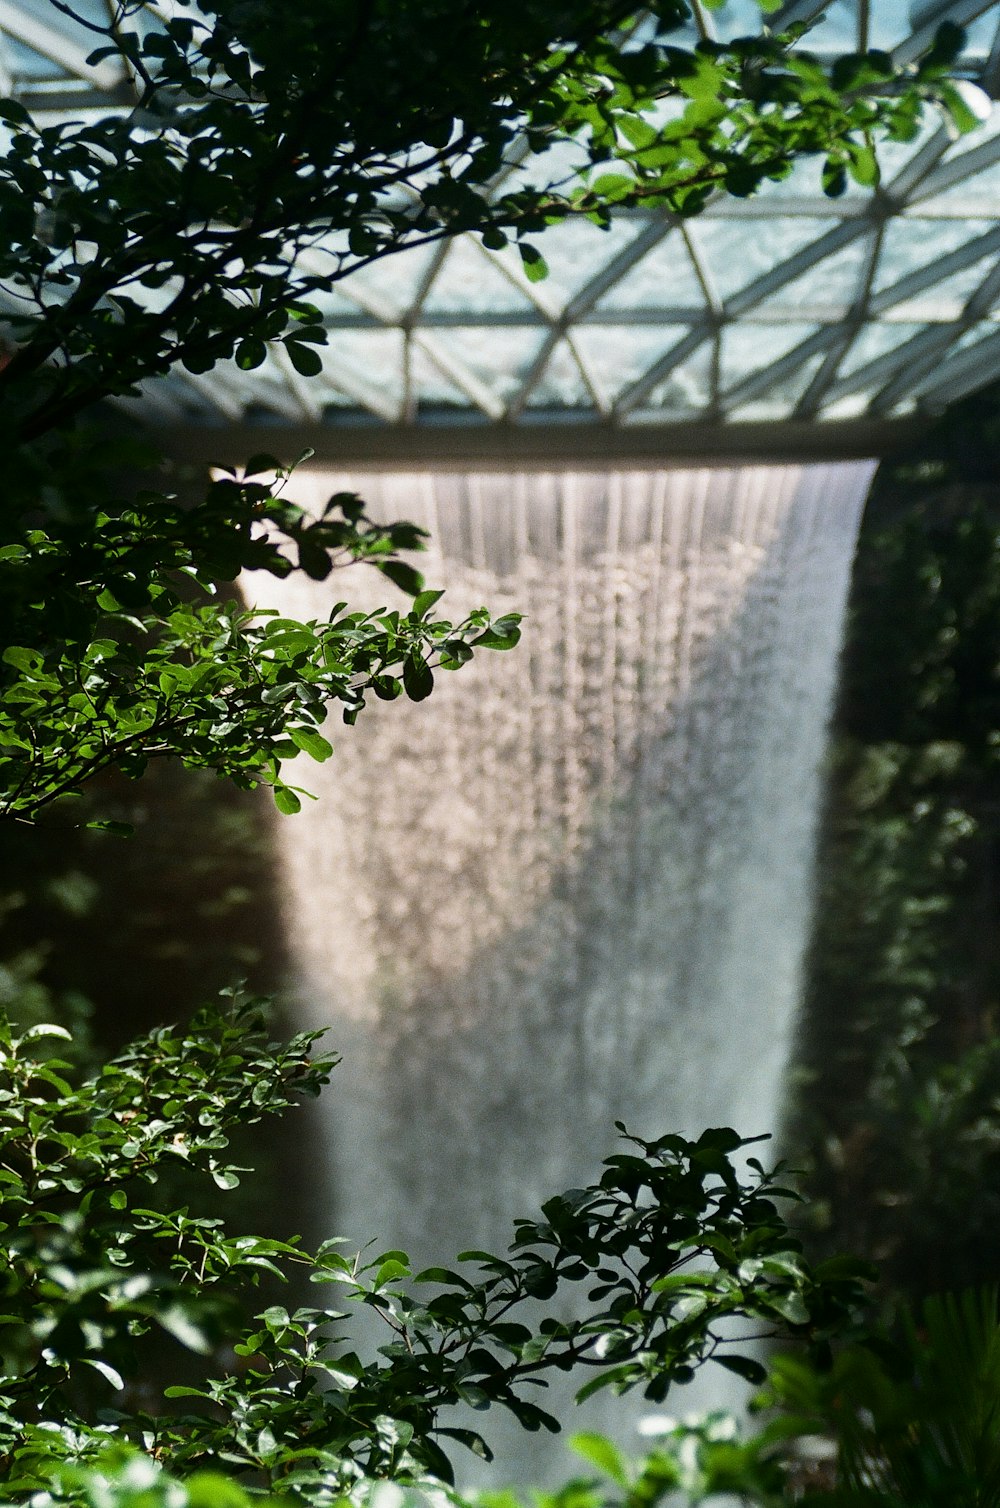 man-made waterfalls during daytime